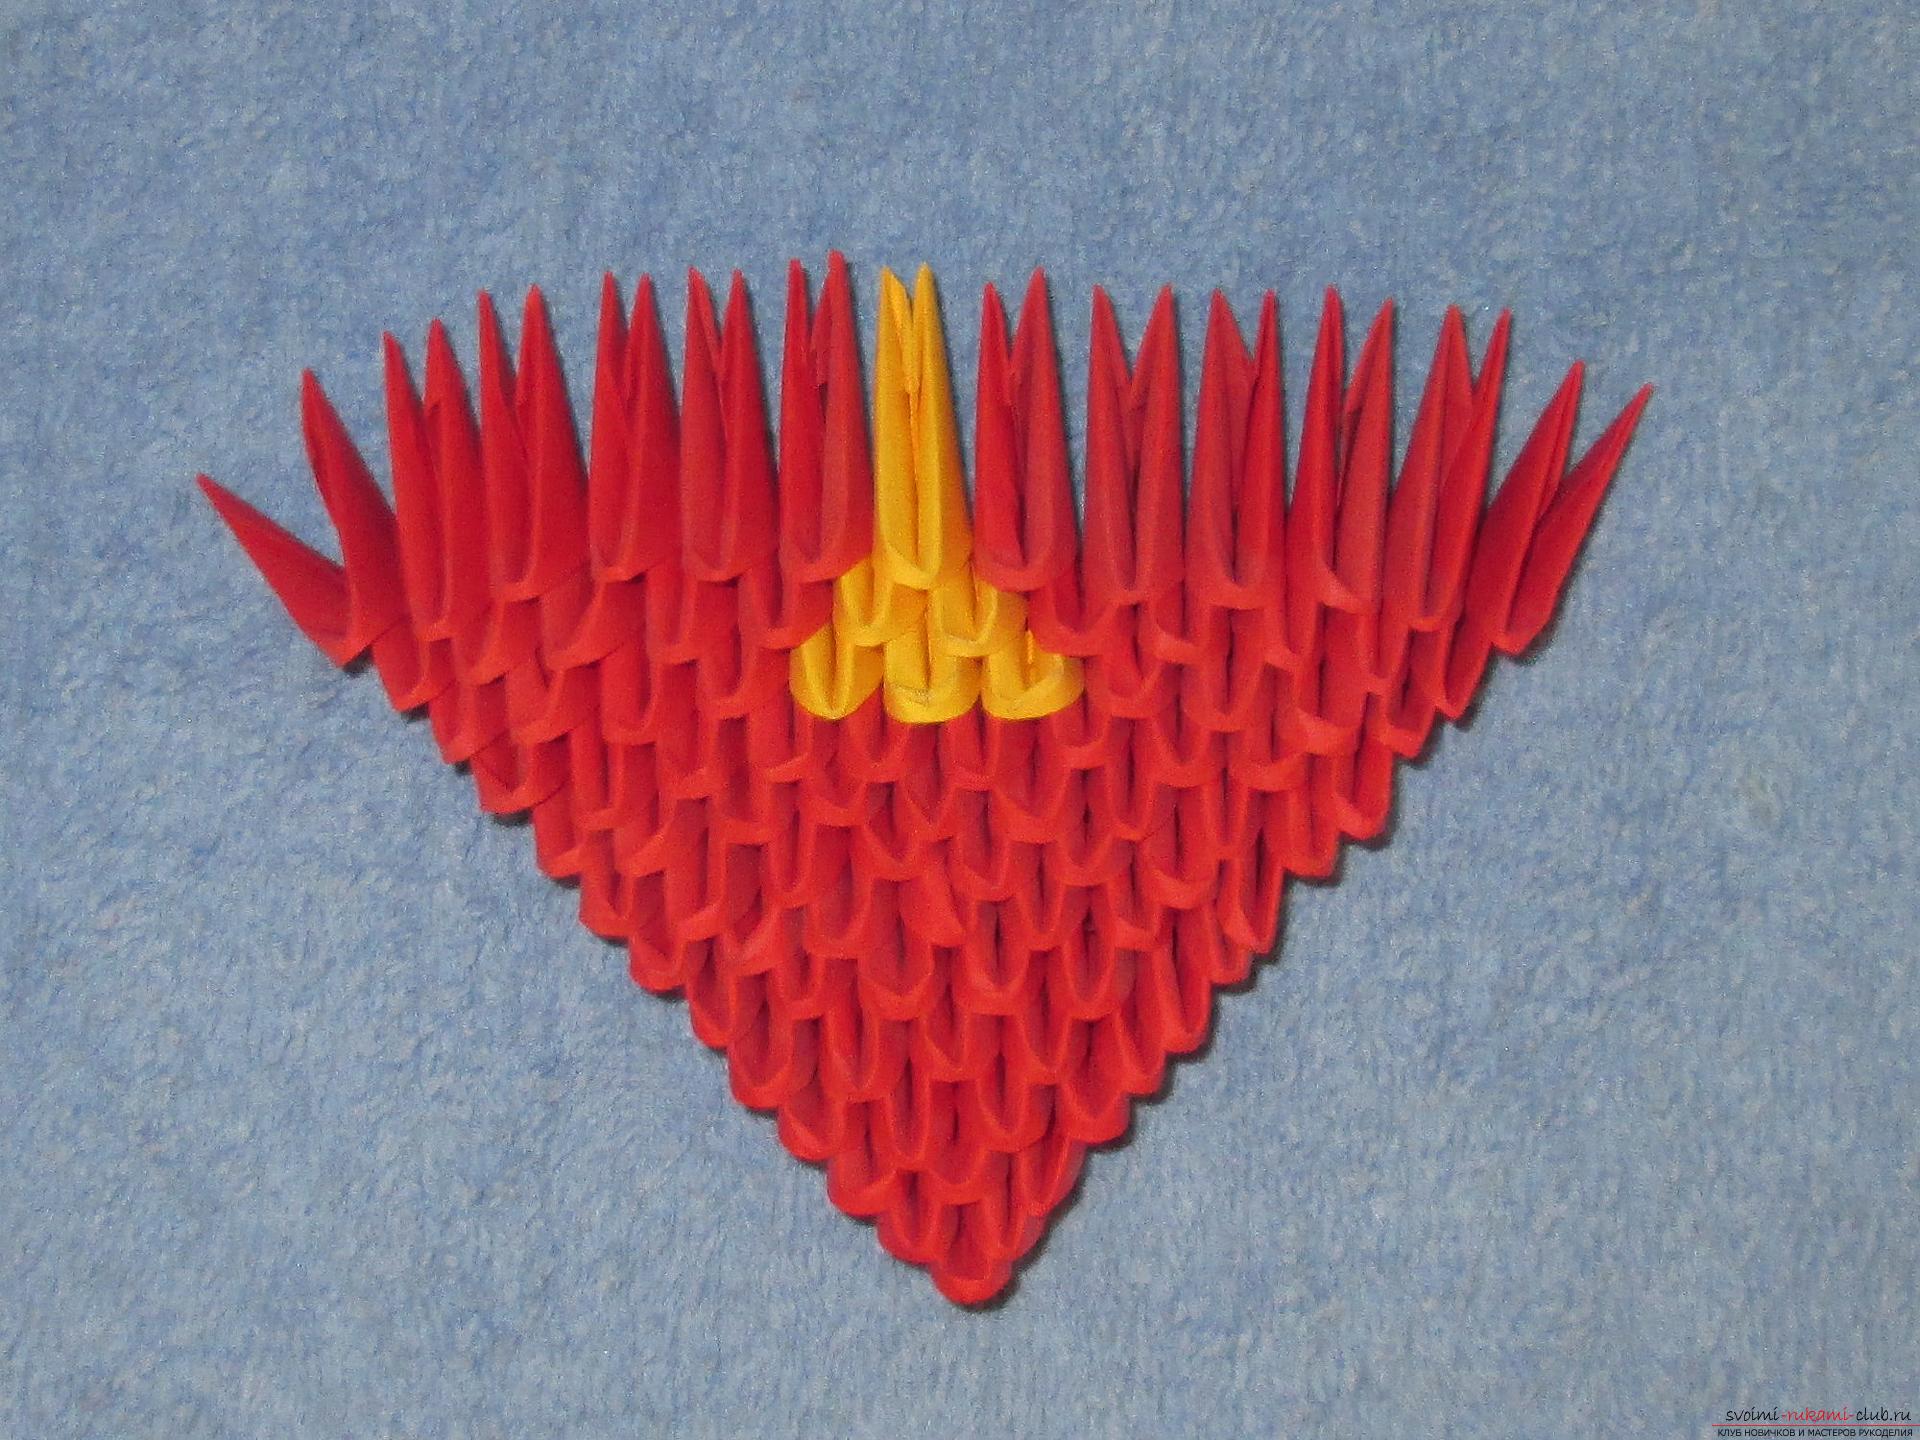 Мастер-класс подарков своими руками – модульного оригами сердечко – очень актуален накануне Дня влюбленных.. Фото №4